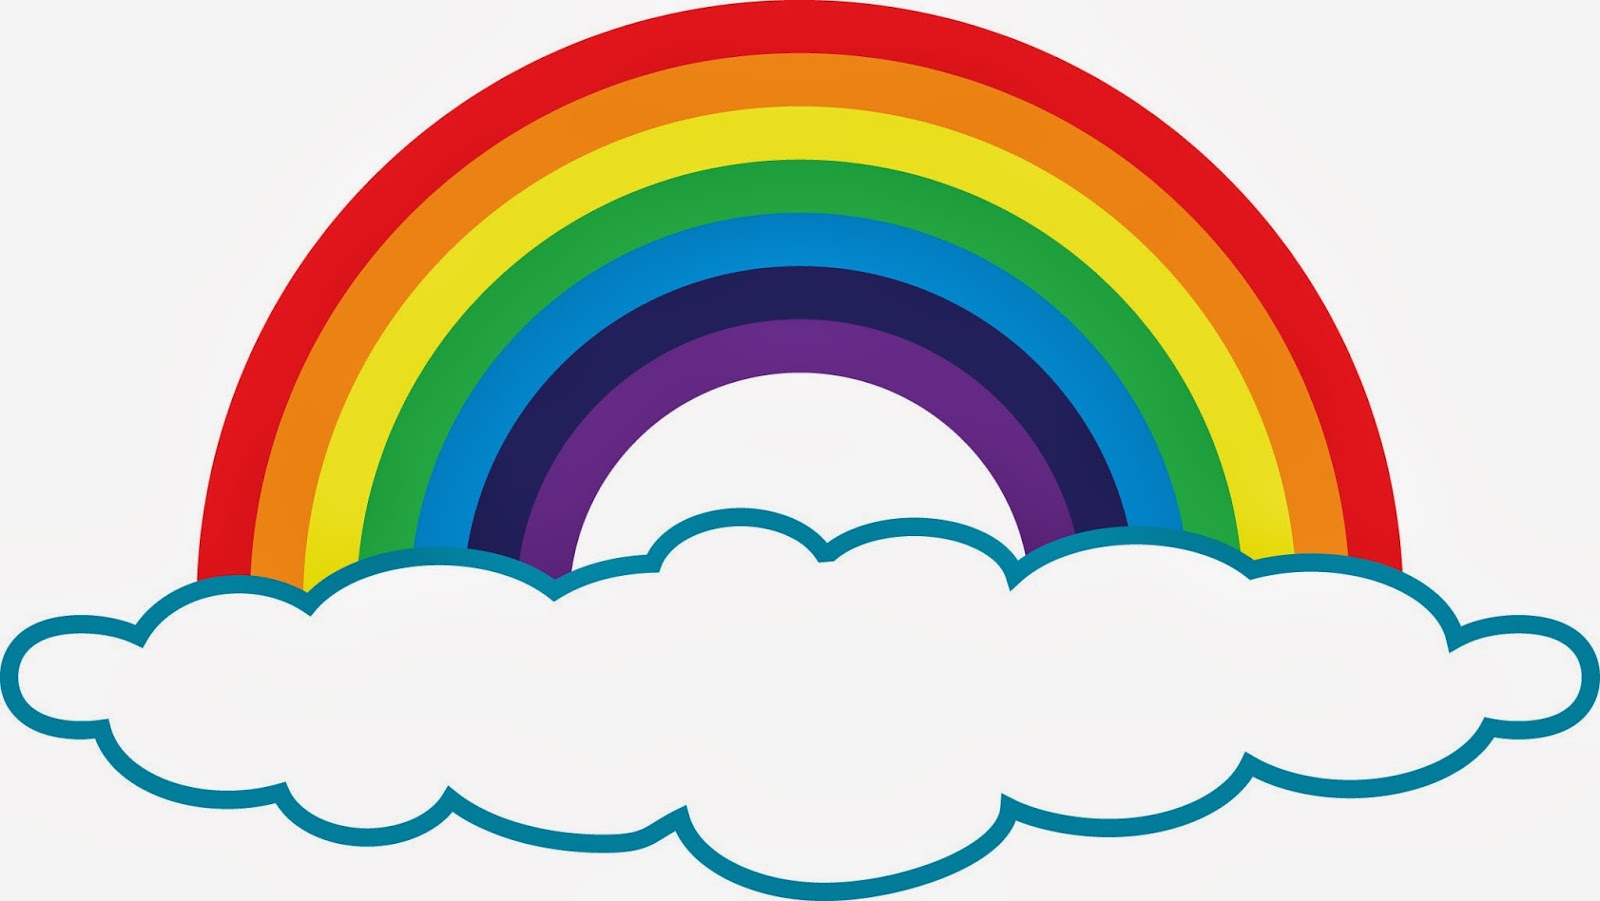 51 Free Rainbow Clip Art - Cliparting.com